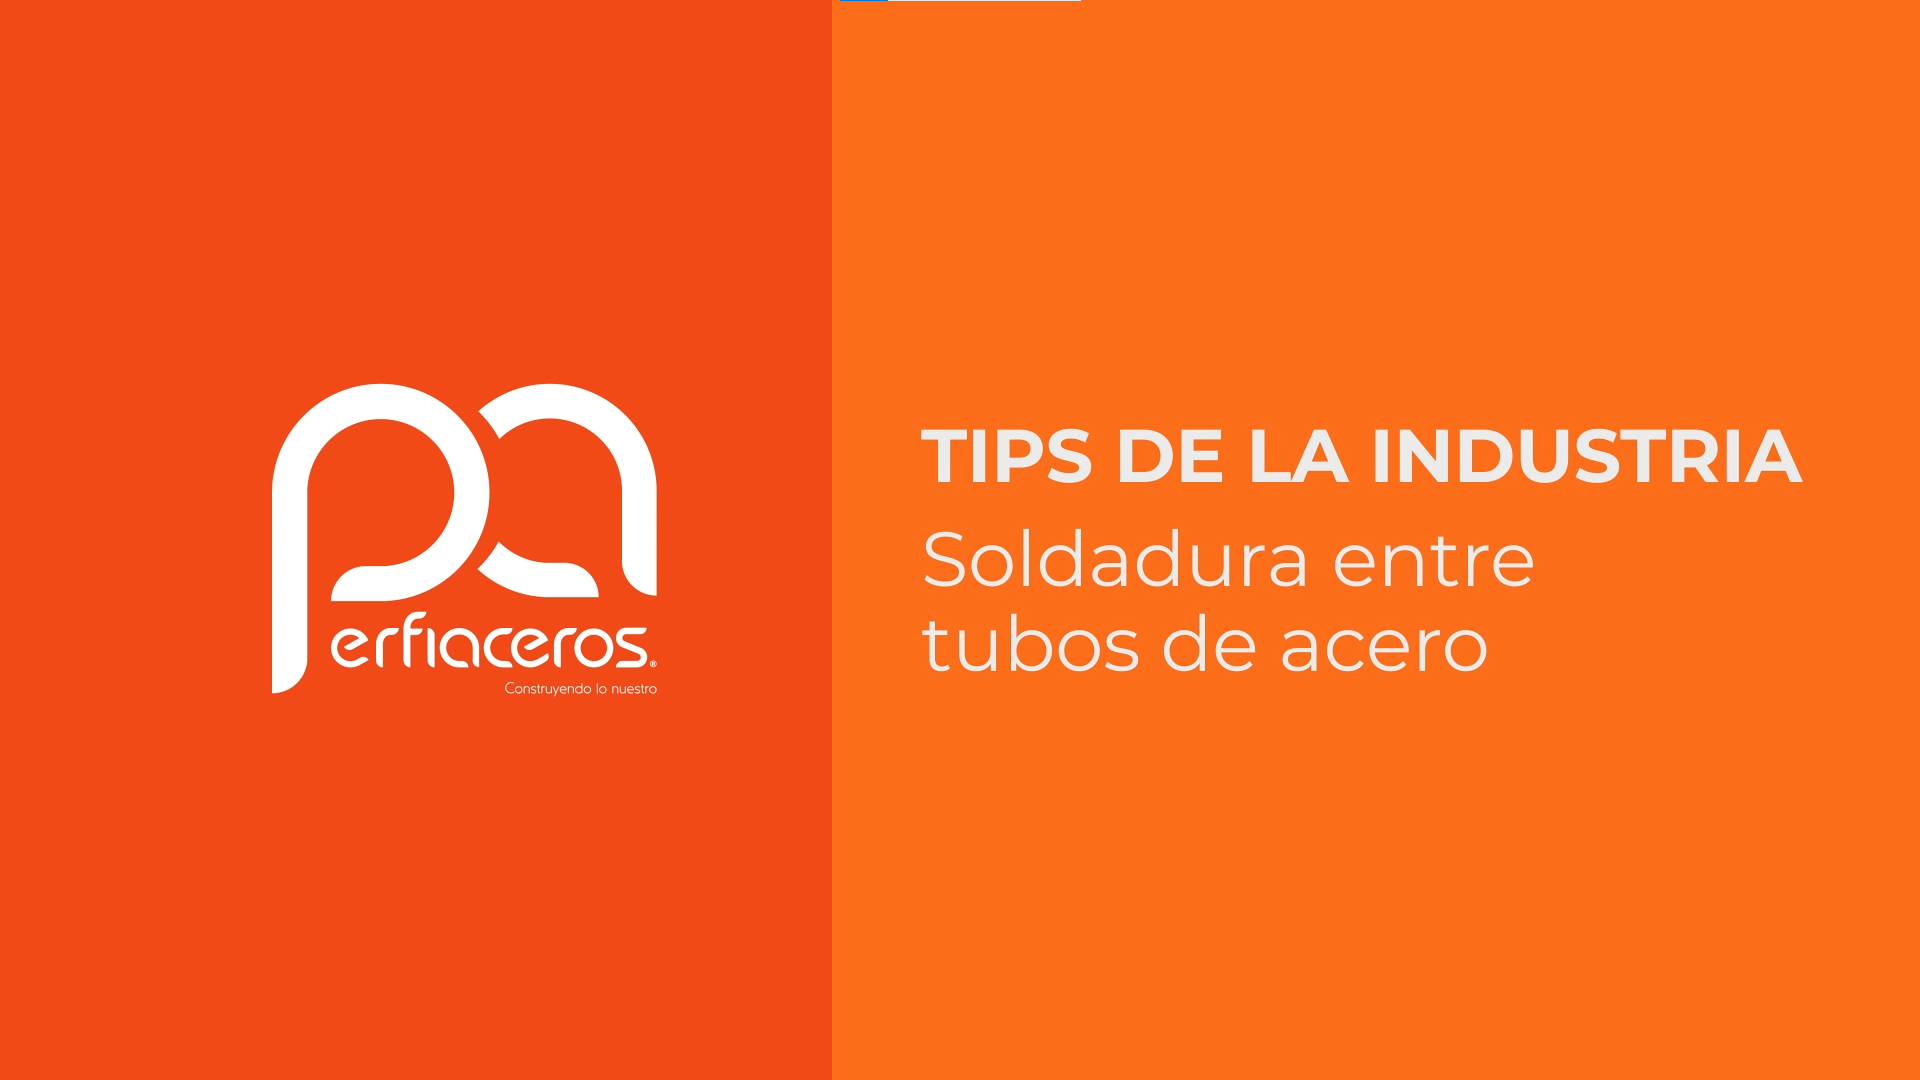 Tips soldadura